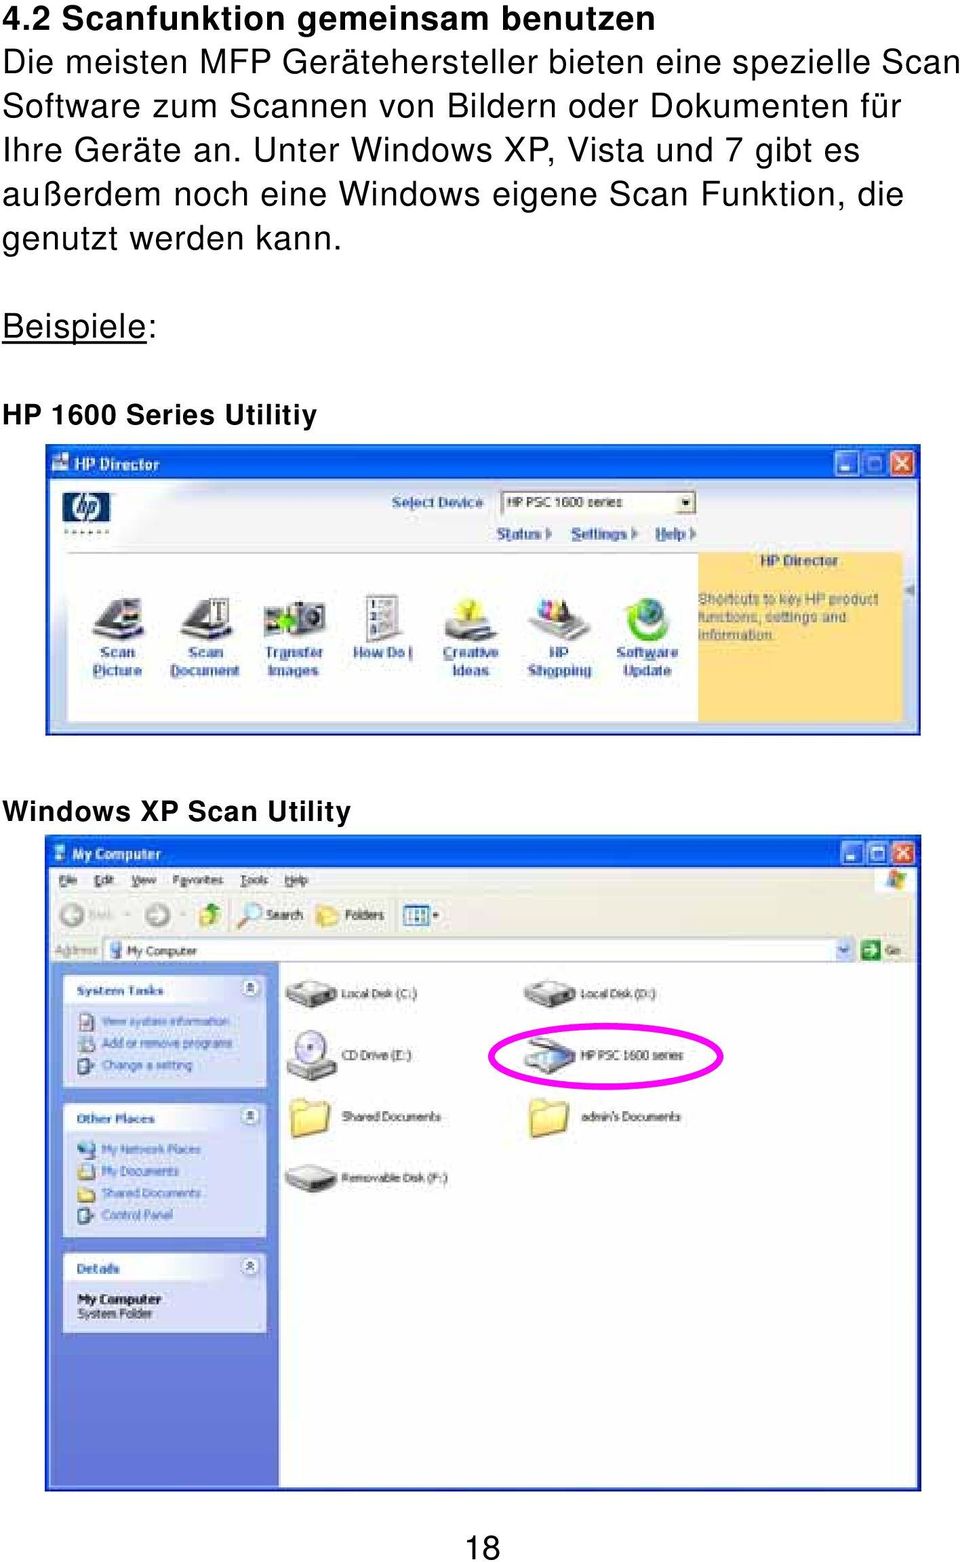 Unter Windows XP, Vista und 7 gibt es außerdem noch eine Windows eigene Scan